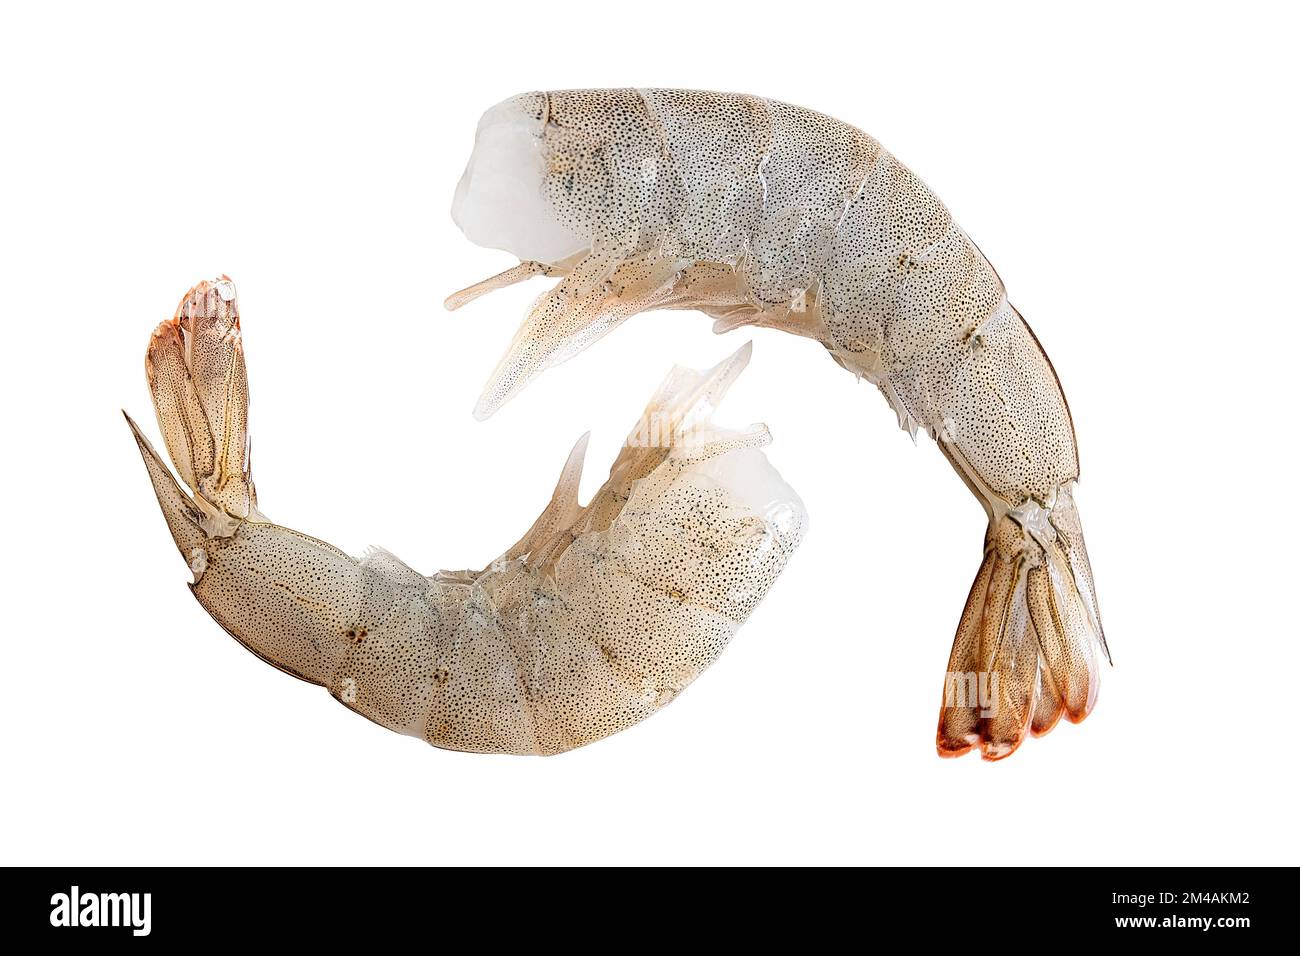 Fresh white shrimps isolated on white background Stock Photo